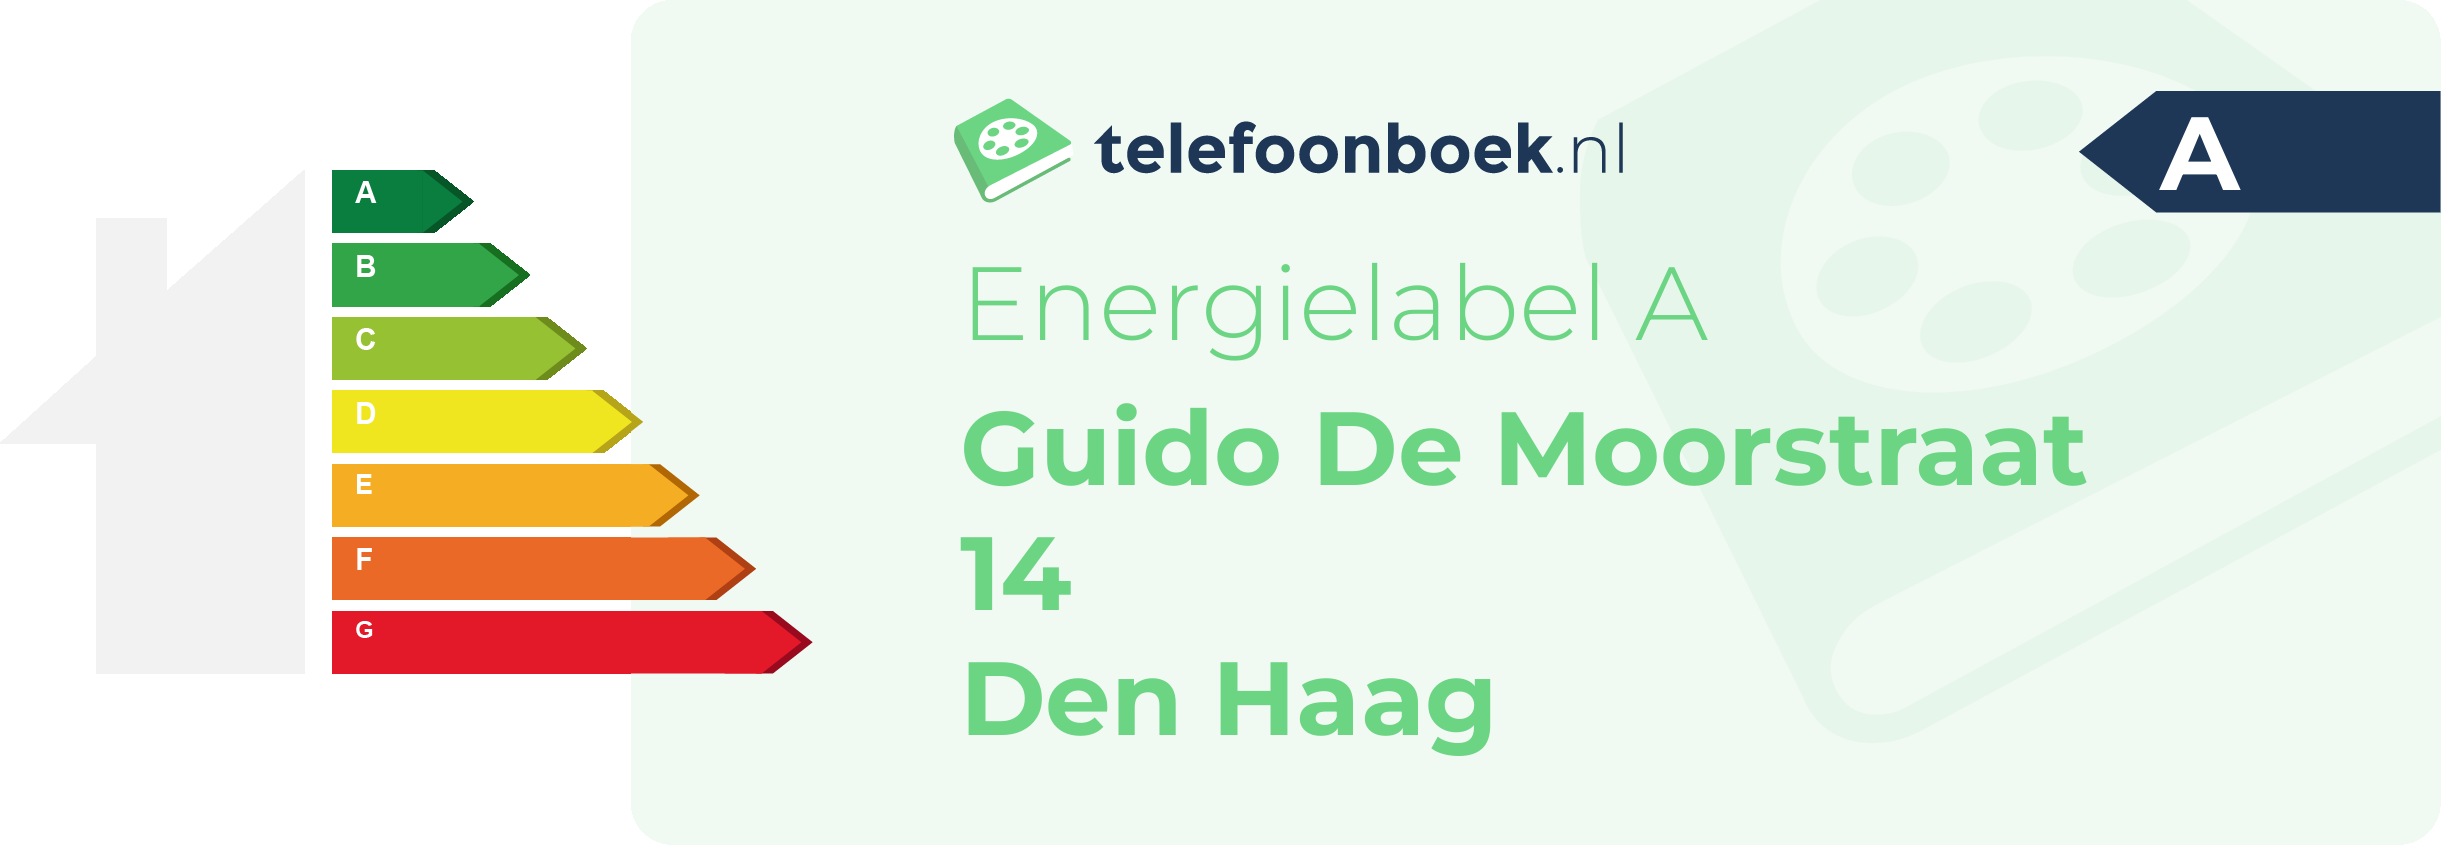 Energielabel Guido De Moorstraat 14 Den Haag